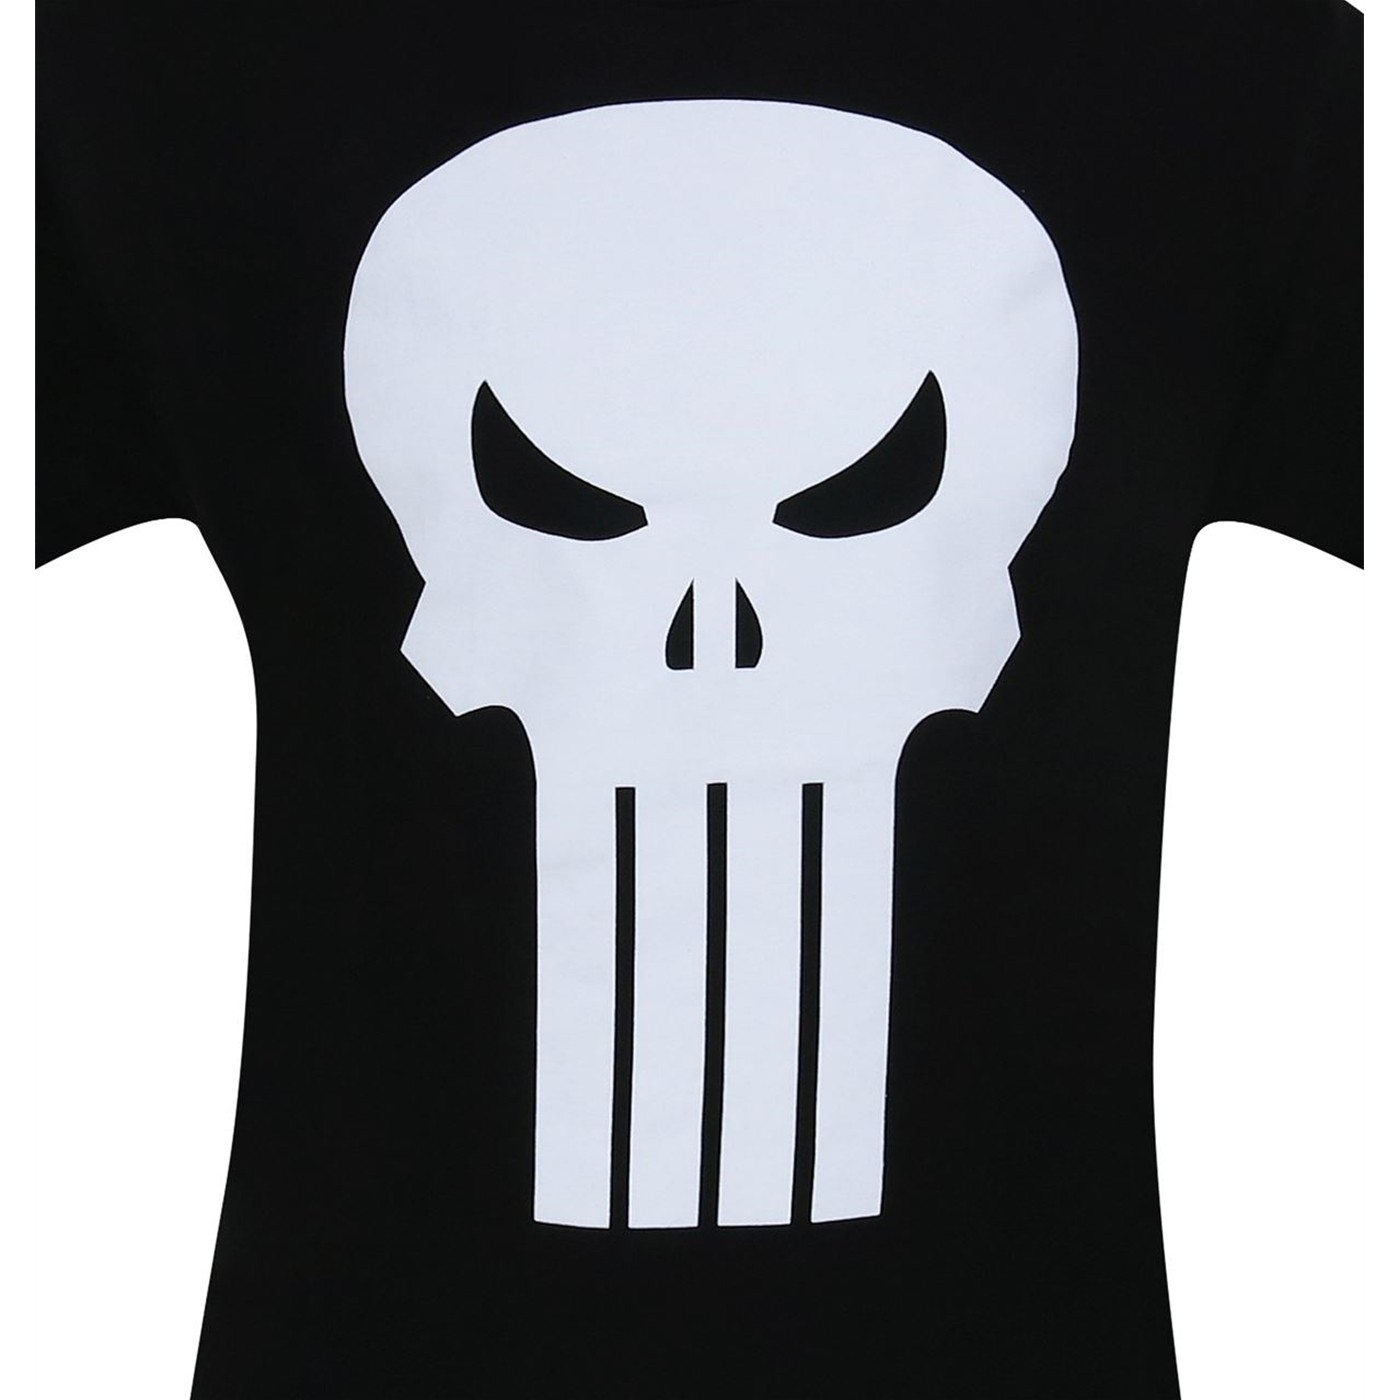 Punisher White Skull T-Shirt